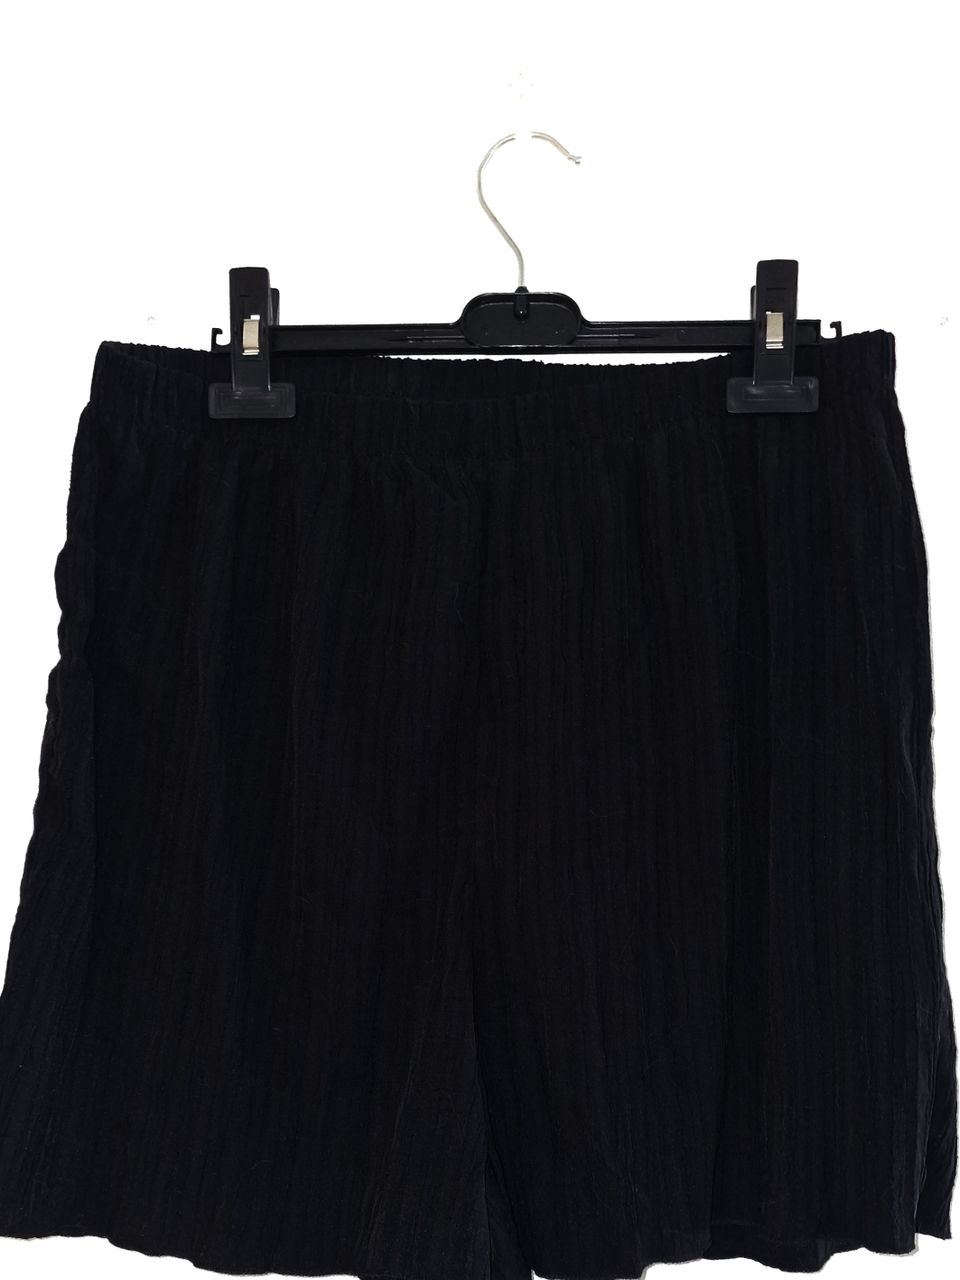 Naisten mustat shortsit, koko XL, uudet, käyttämättömät